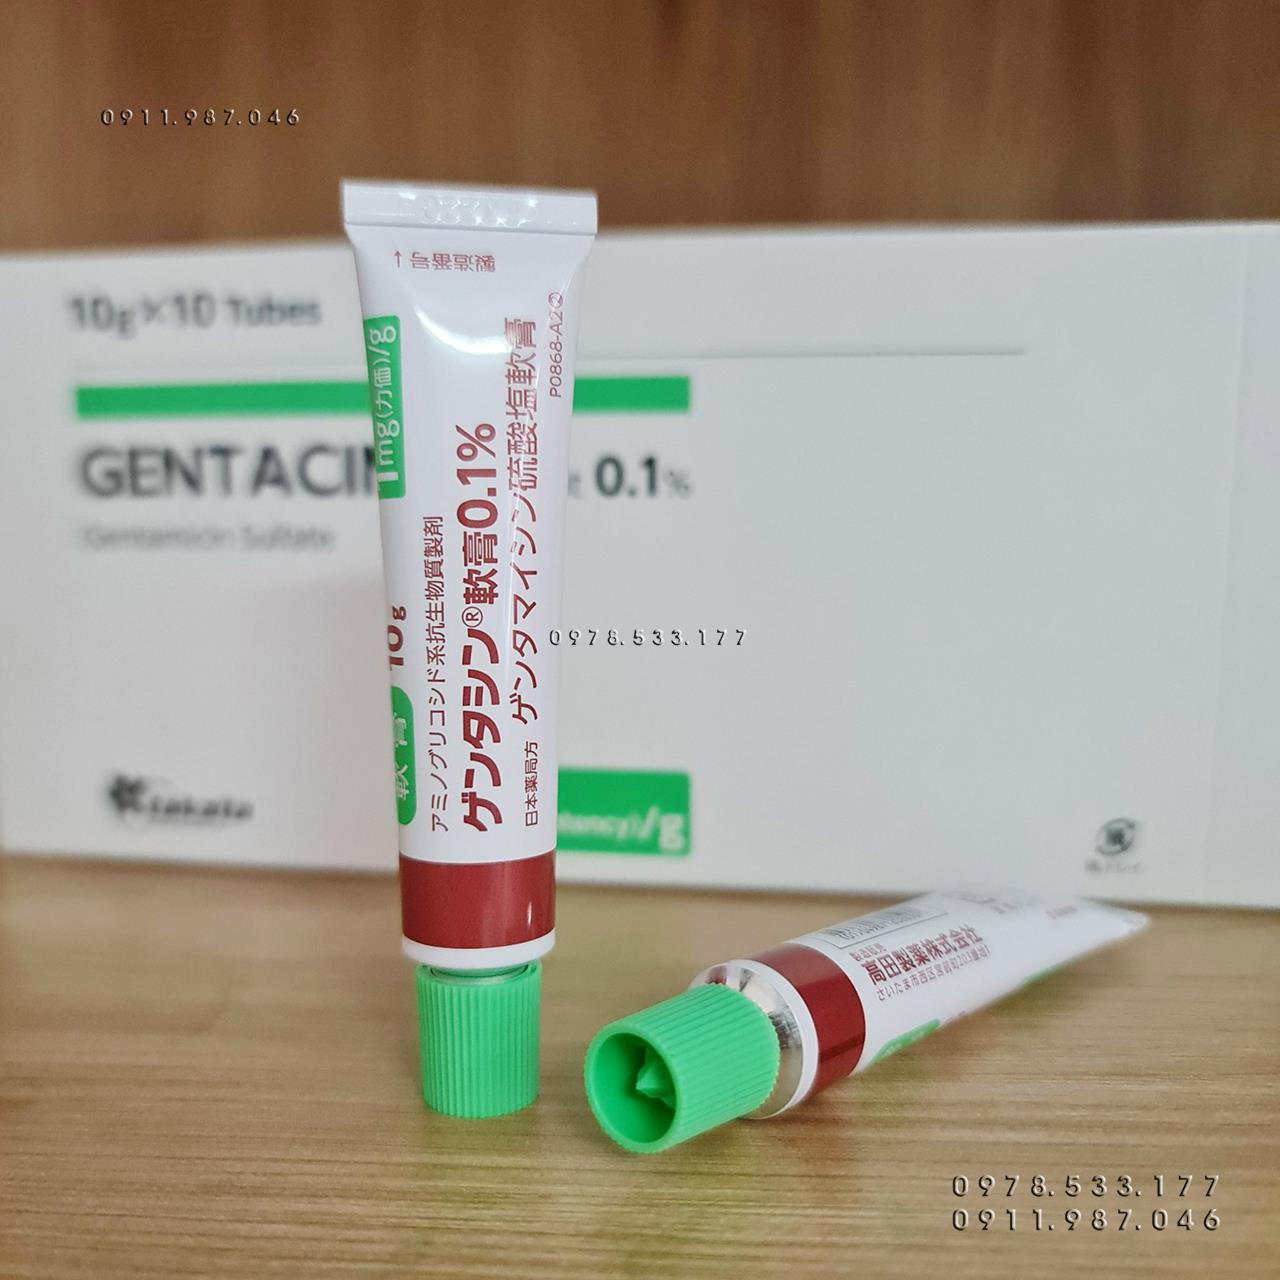 Kem trị sẹo Gentacin 10g chính hãng Nhật Bản (mẫu mới) - PN44697